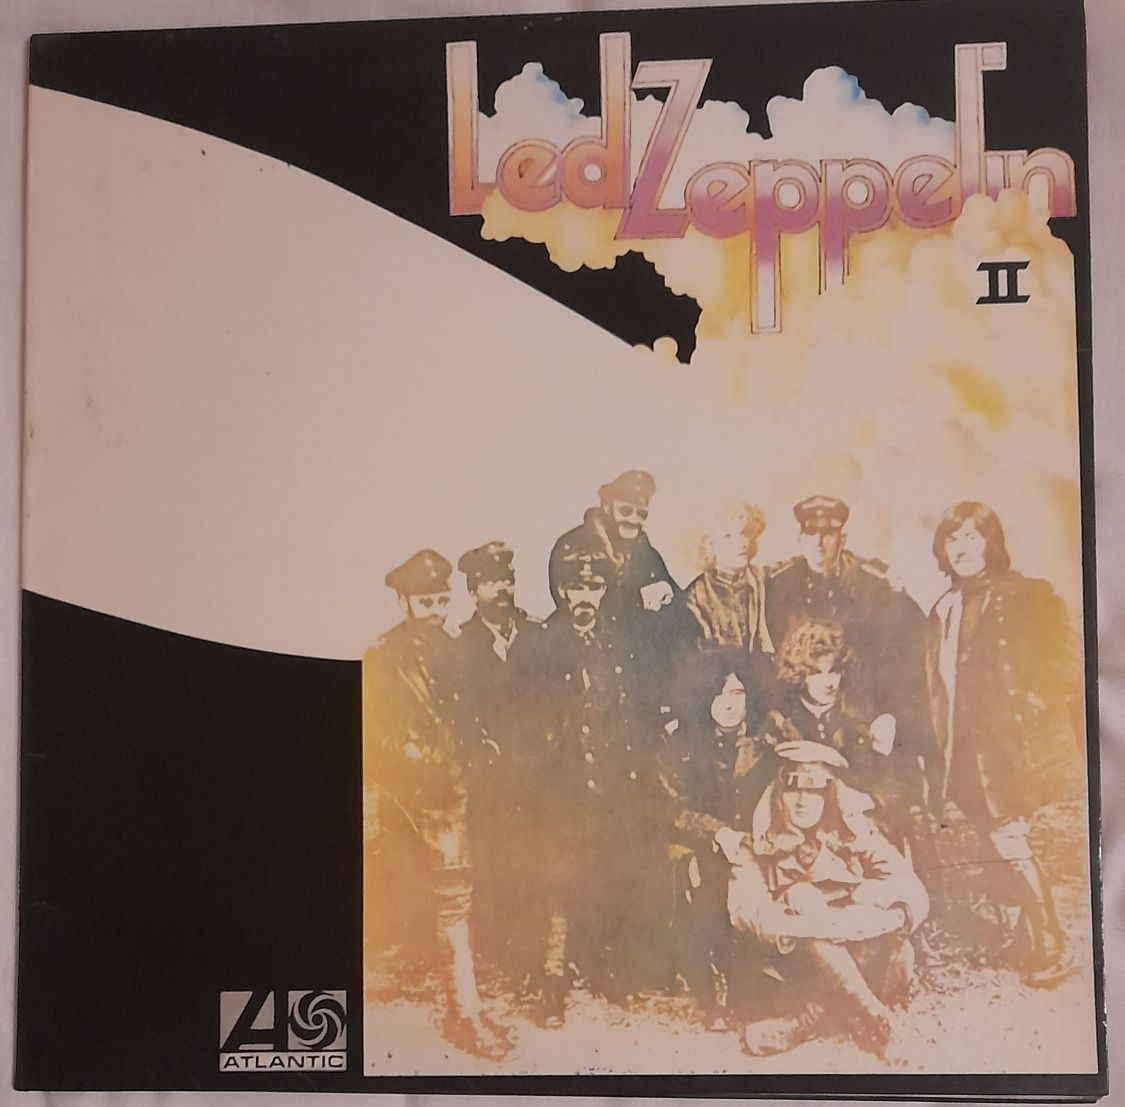 Lp Led Zeppelin II - 1969